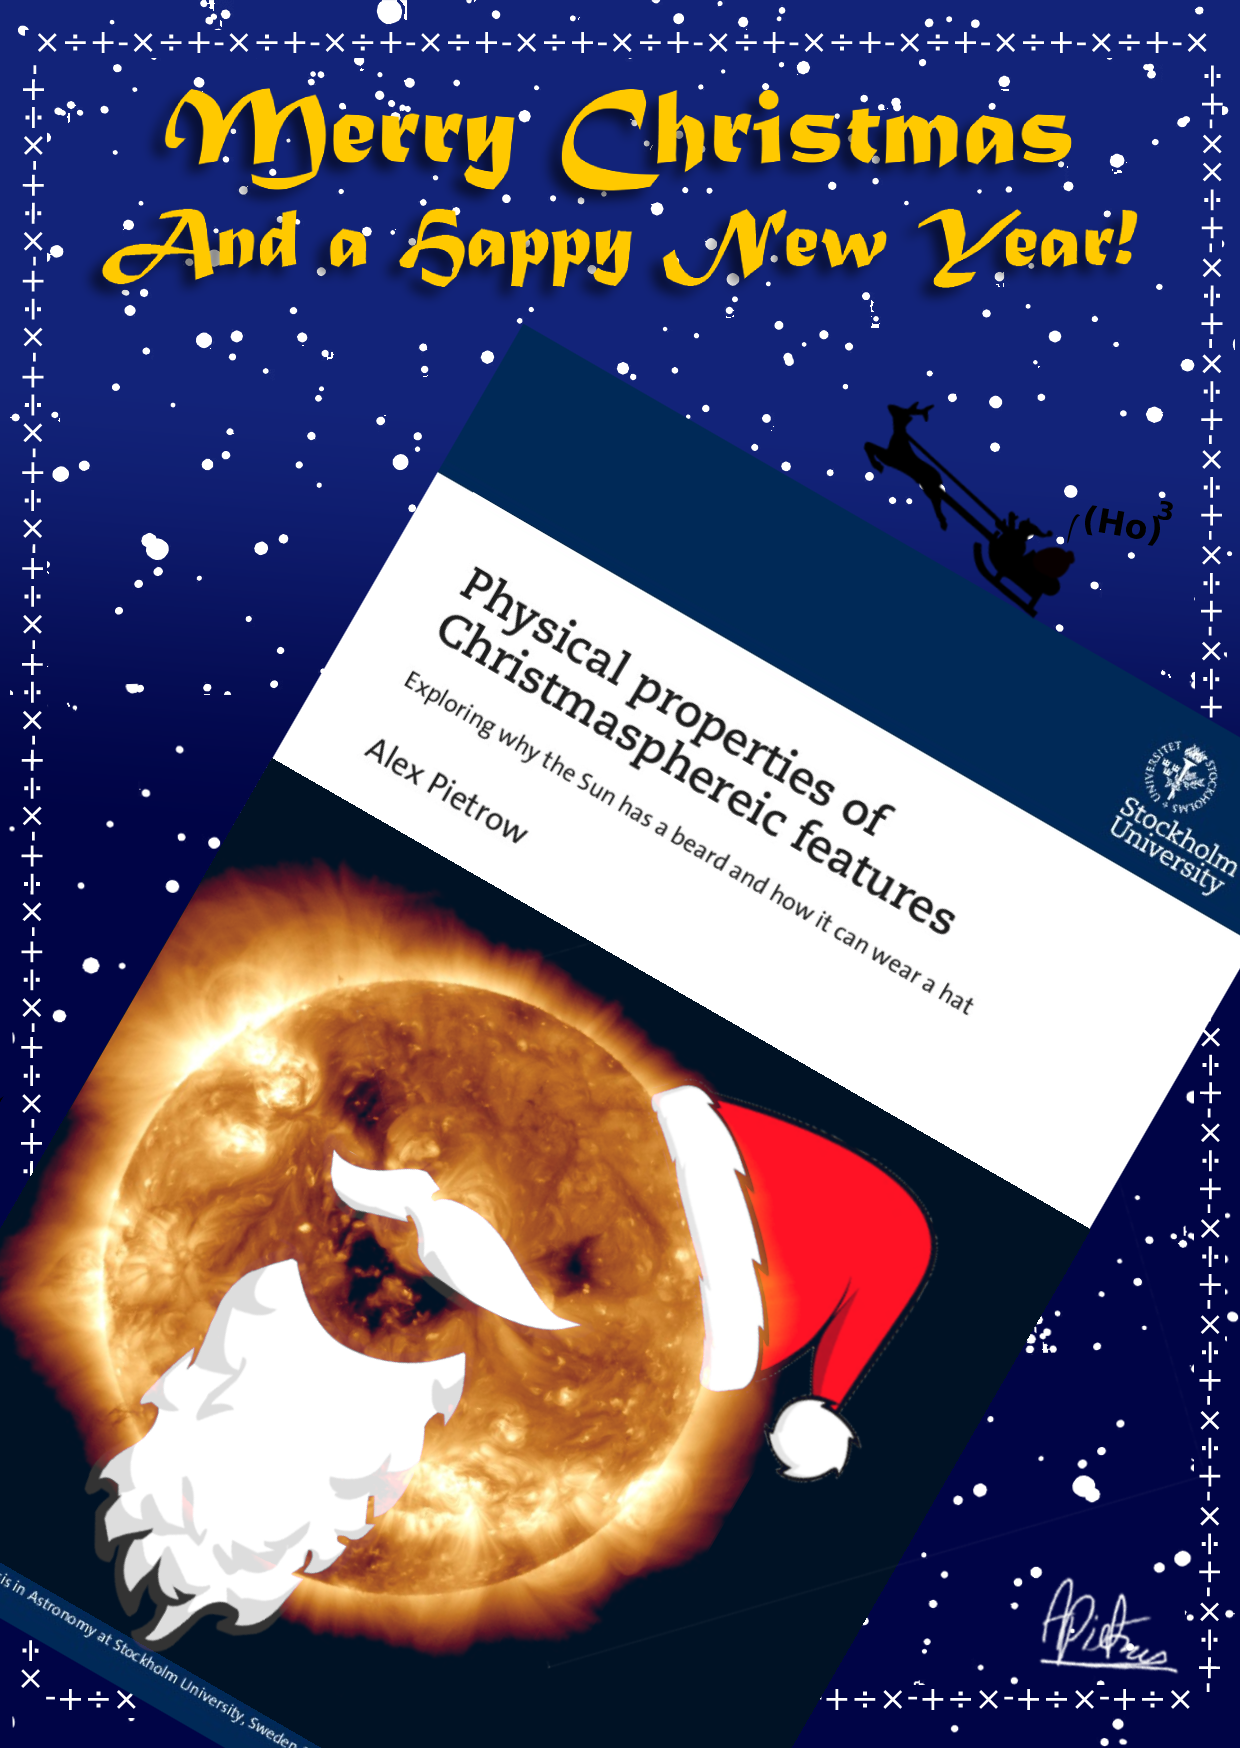 PhD Thesis Christmas card